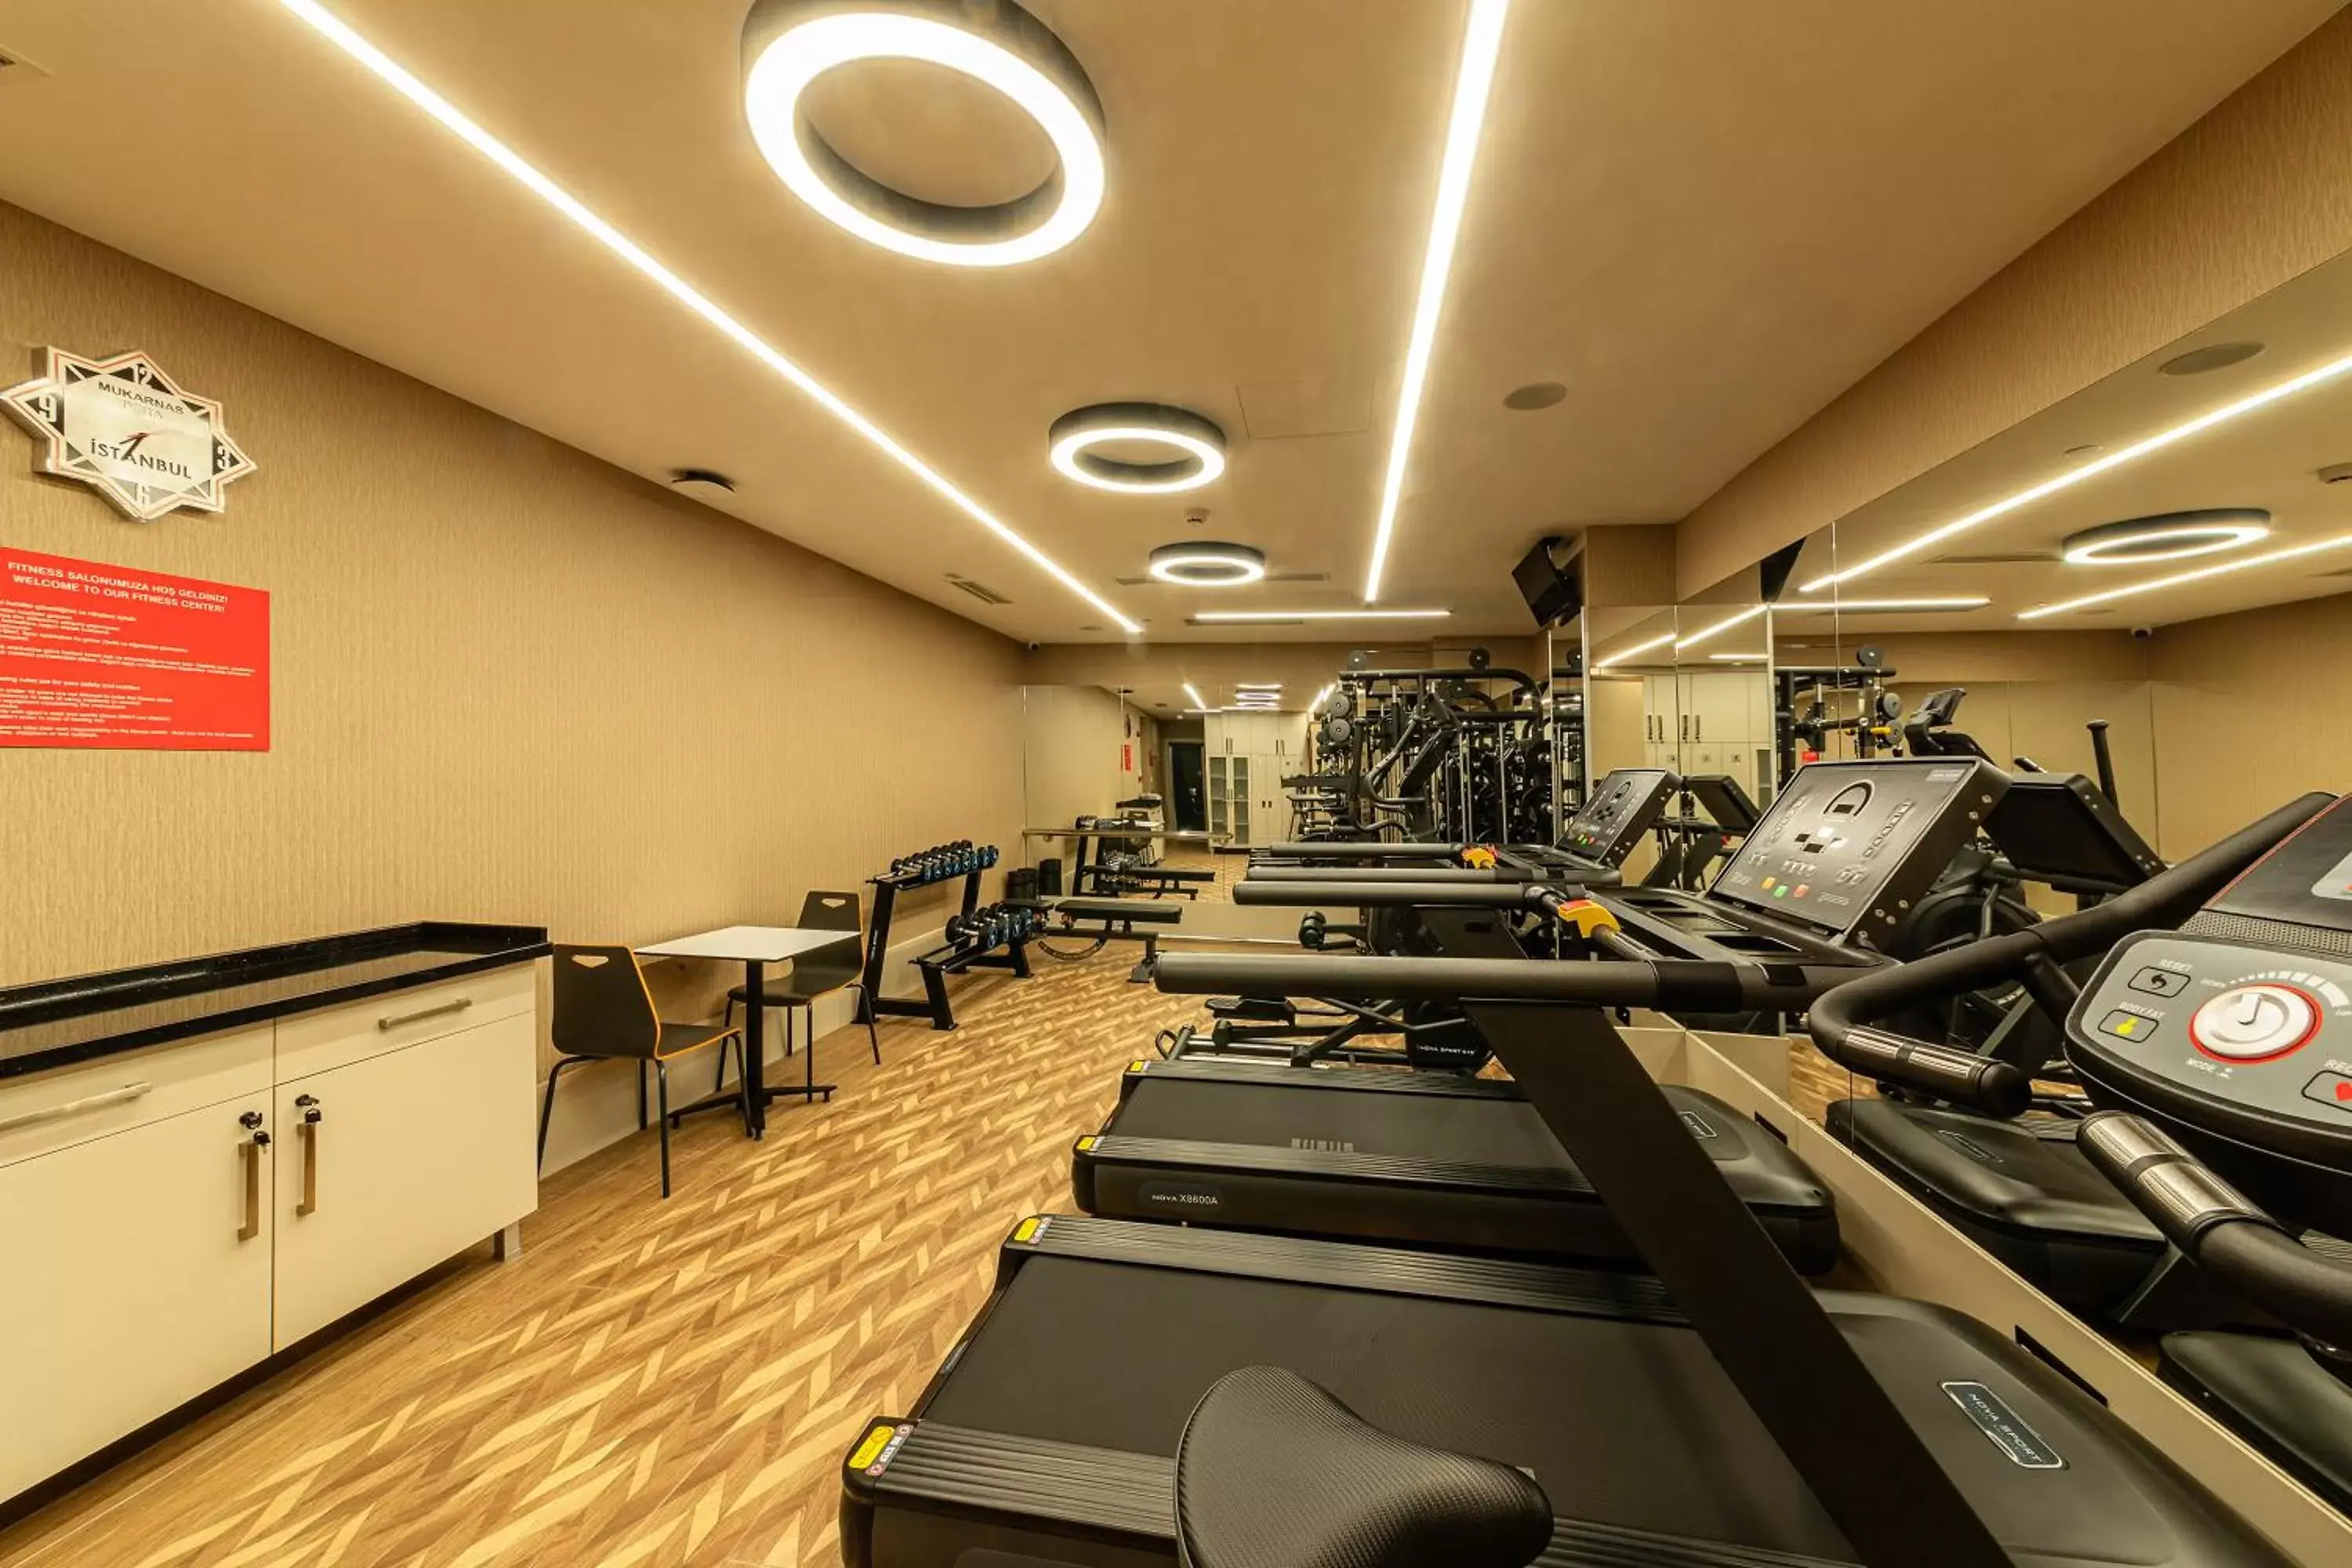 Fitness centre/facilities, Fitness Center/Facilities in Mukarnas Pera Hotel